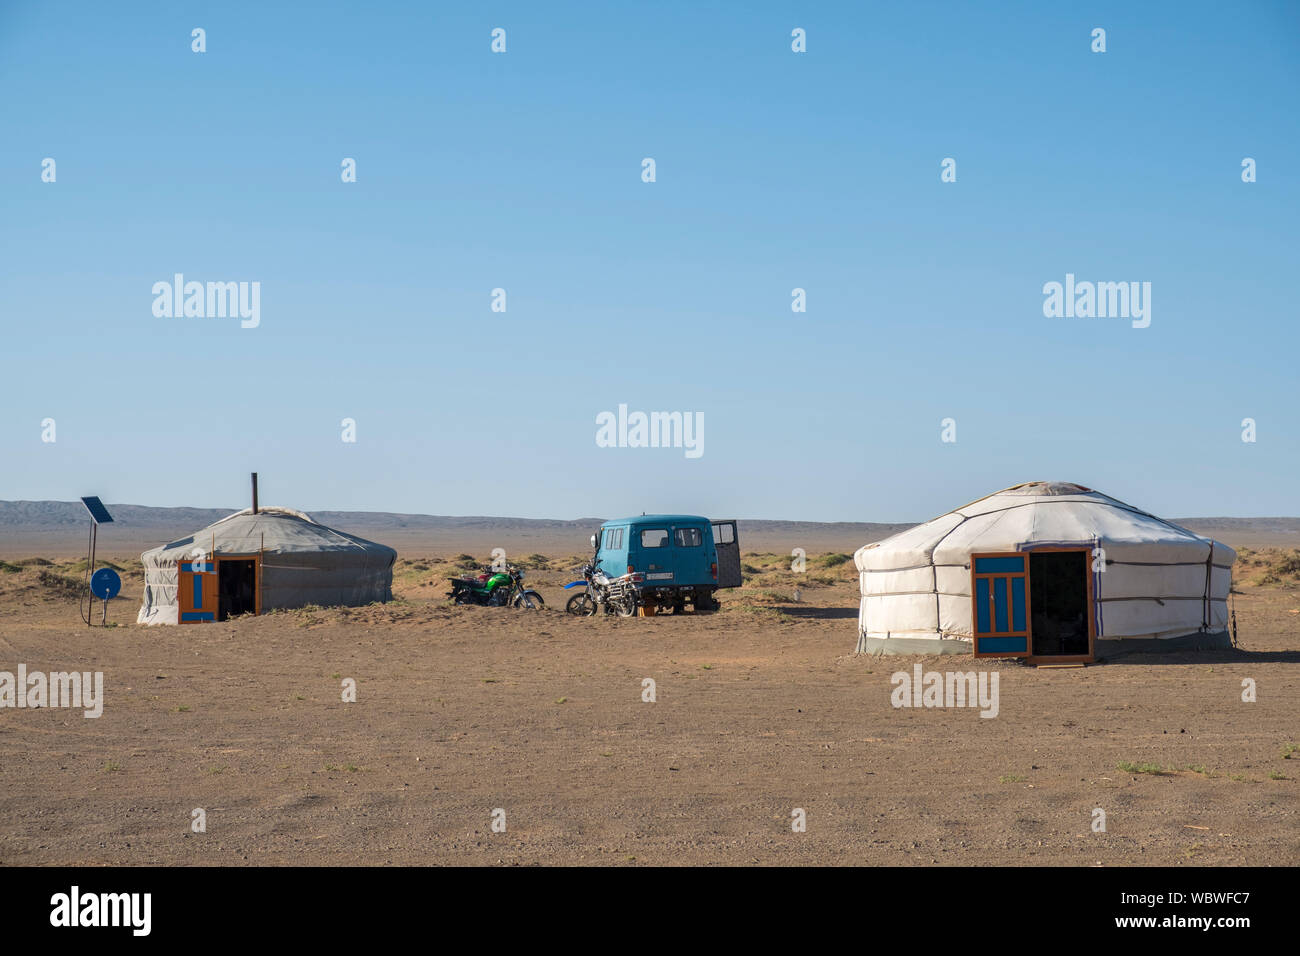 La yurta es una vivienda utilizada por los nómadas en las estepas del Asia central, protegido por una cubierta gruesa, fácil de transportar y óptimo para soportar el inten Foto de stock